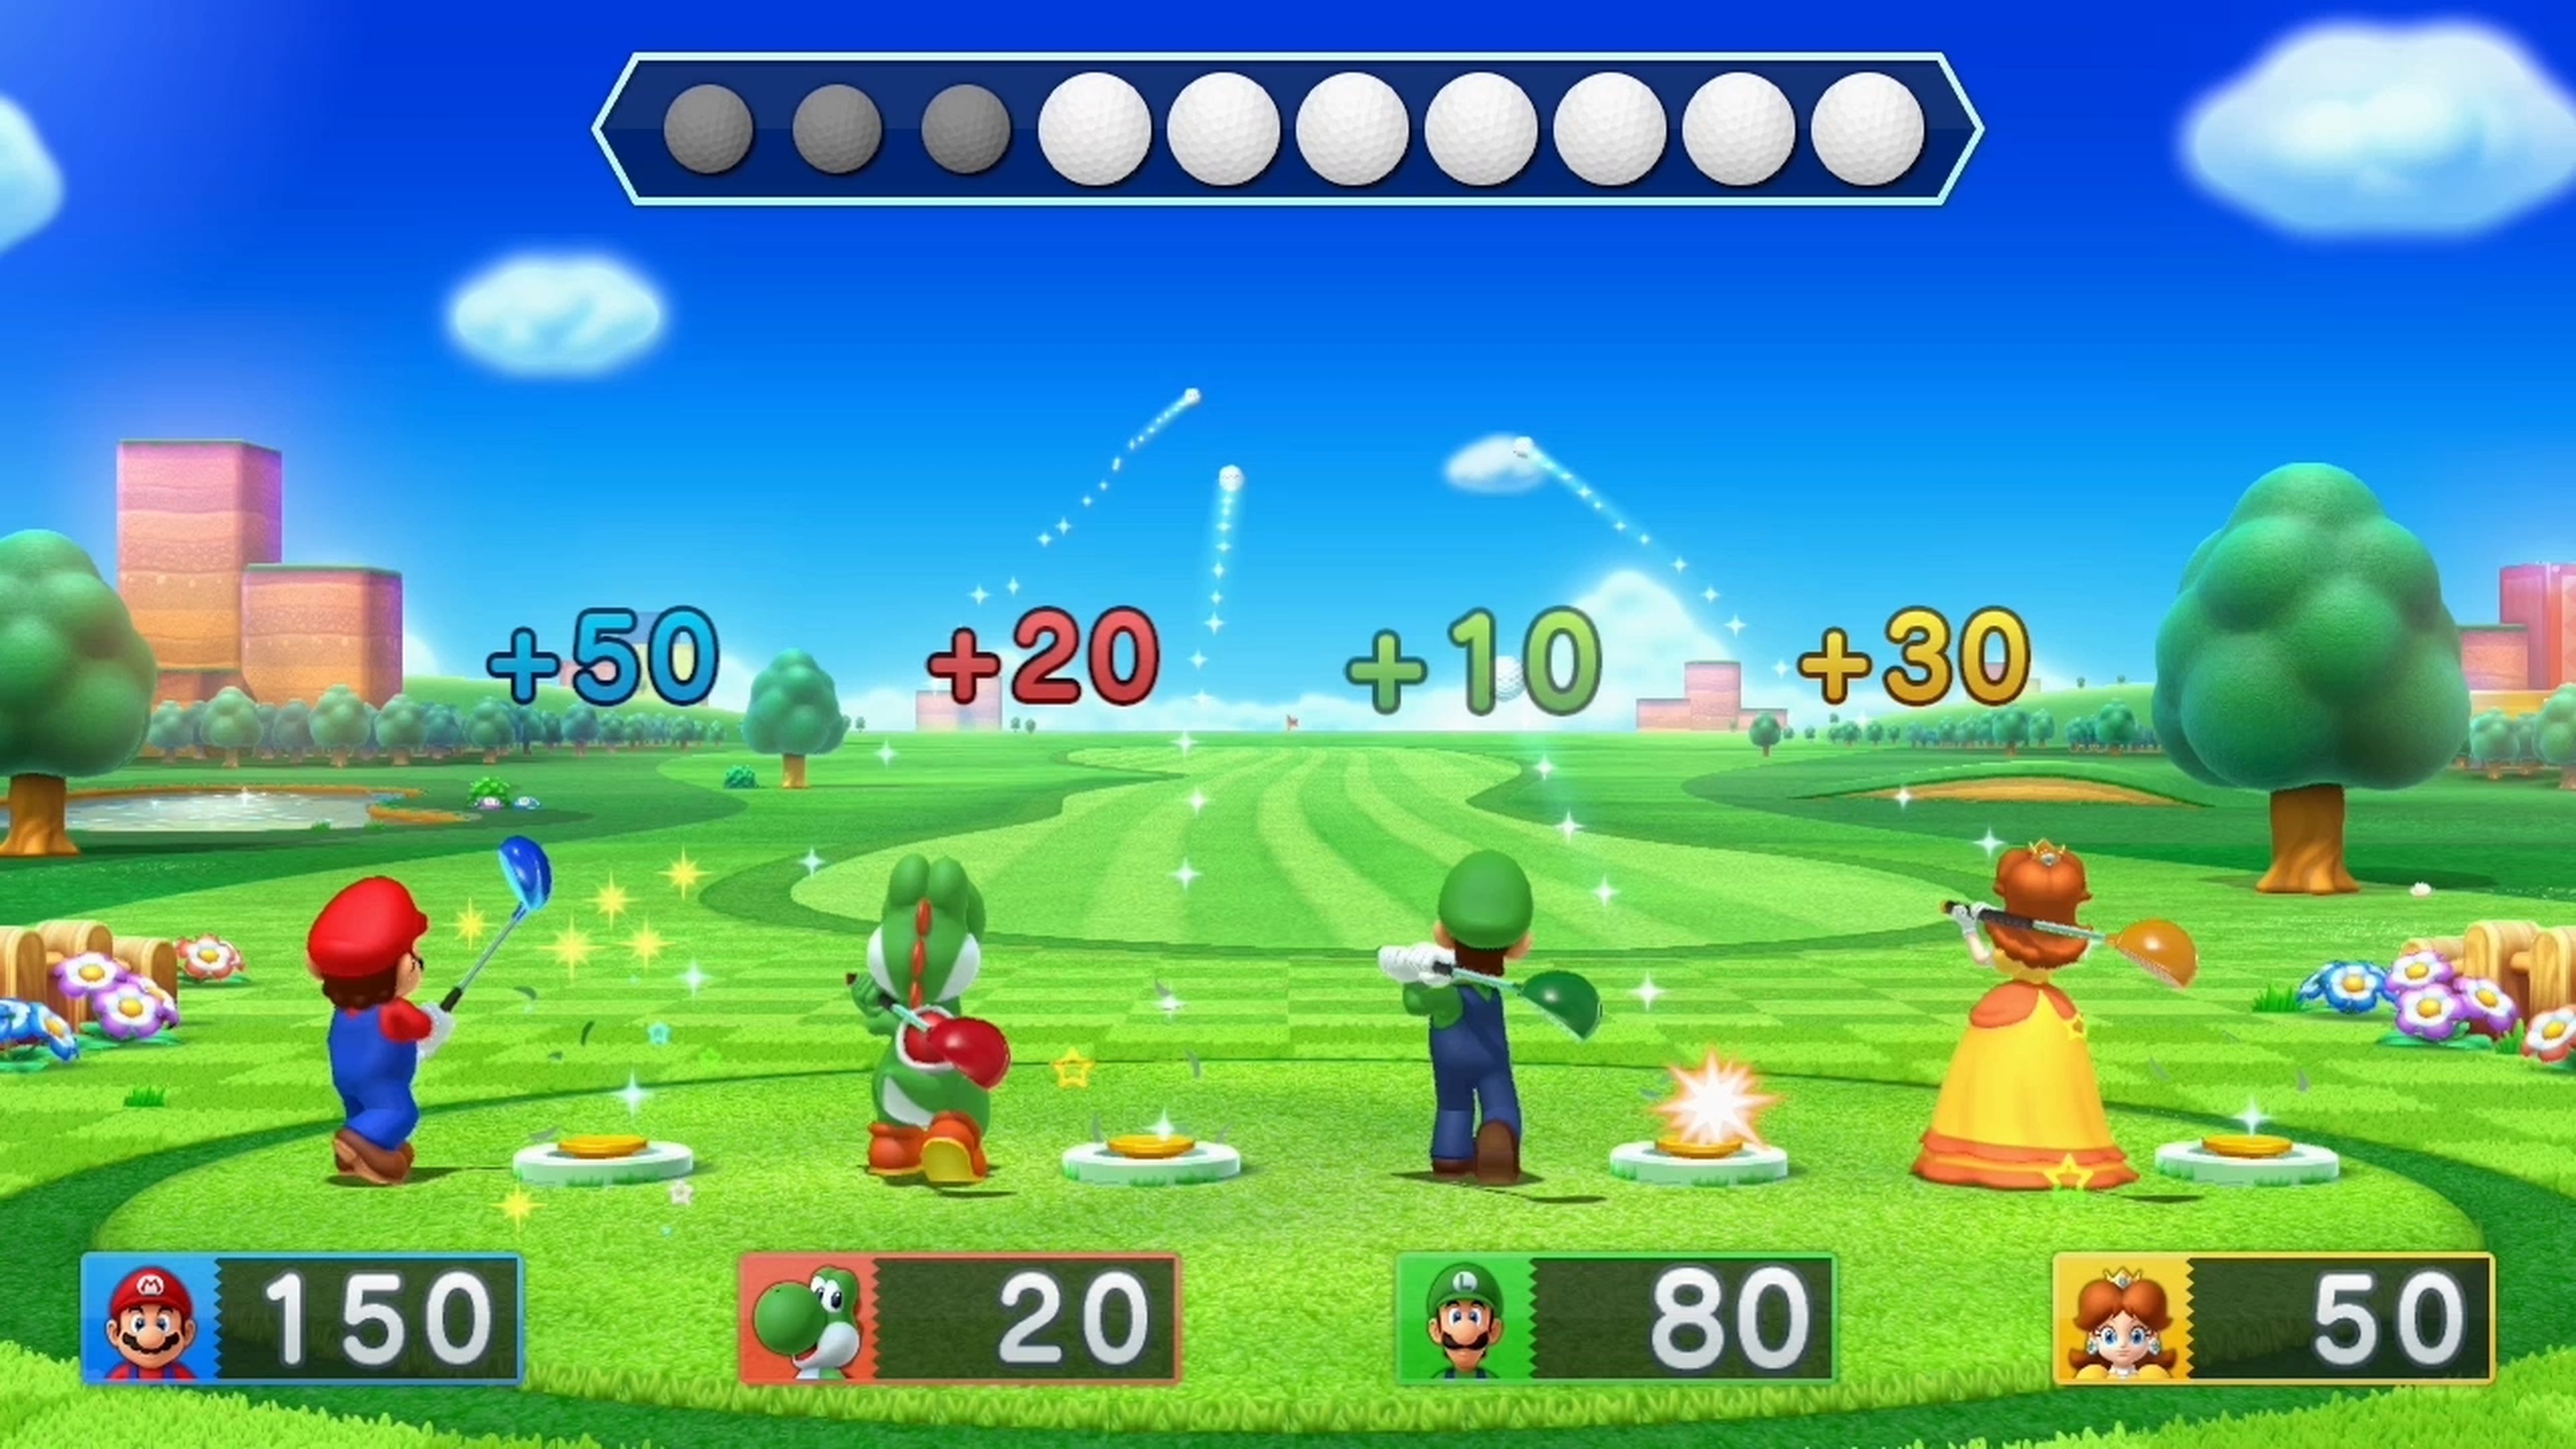 Avance de Mario Party 10